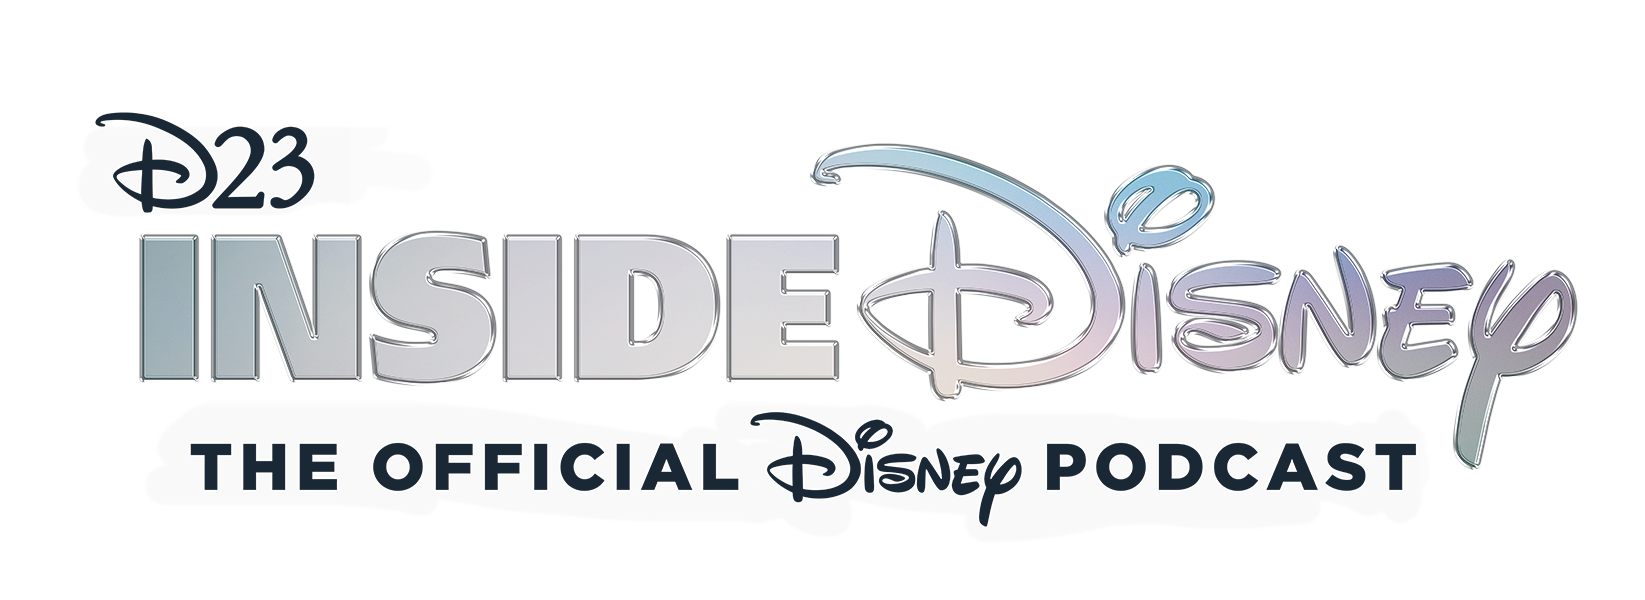 D23 Inside Disney Podcast Logo